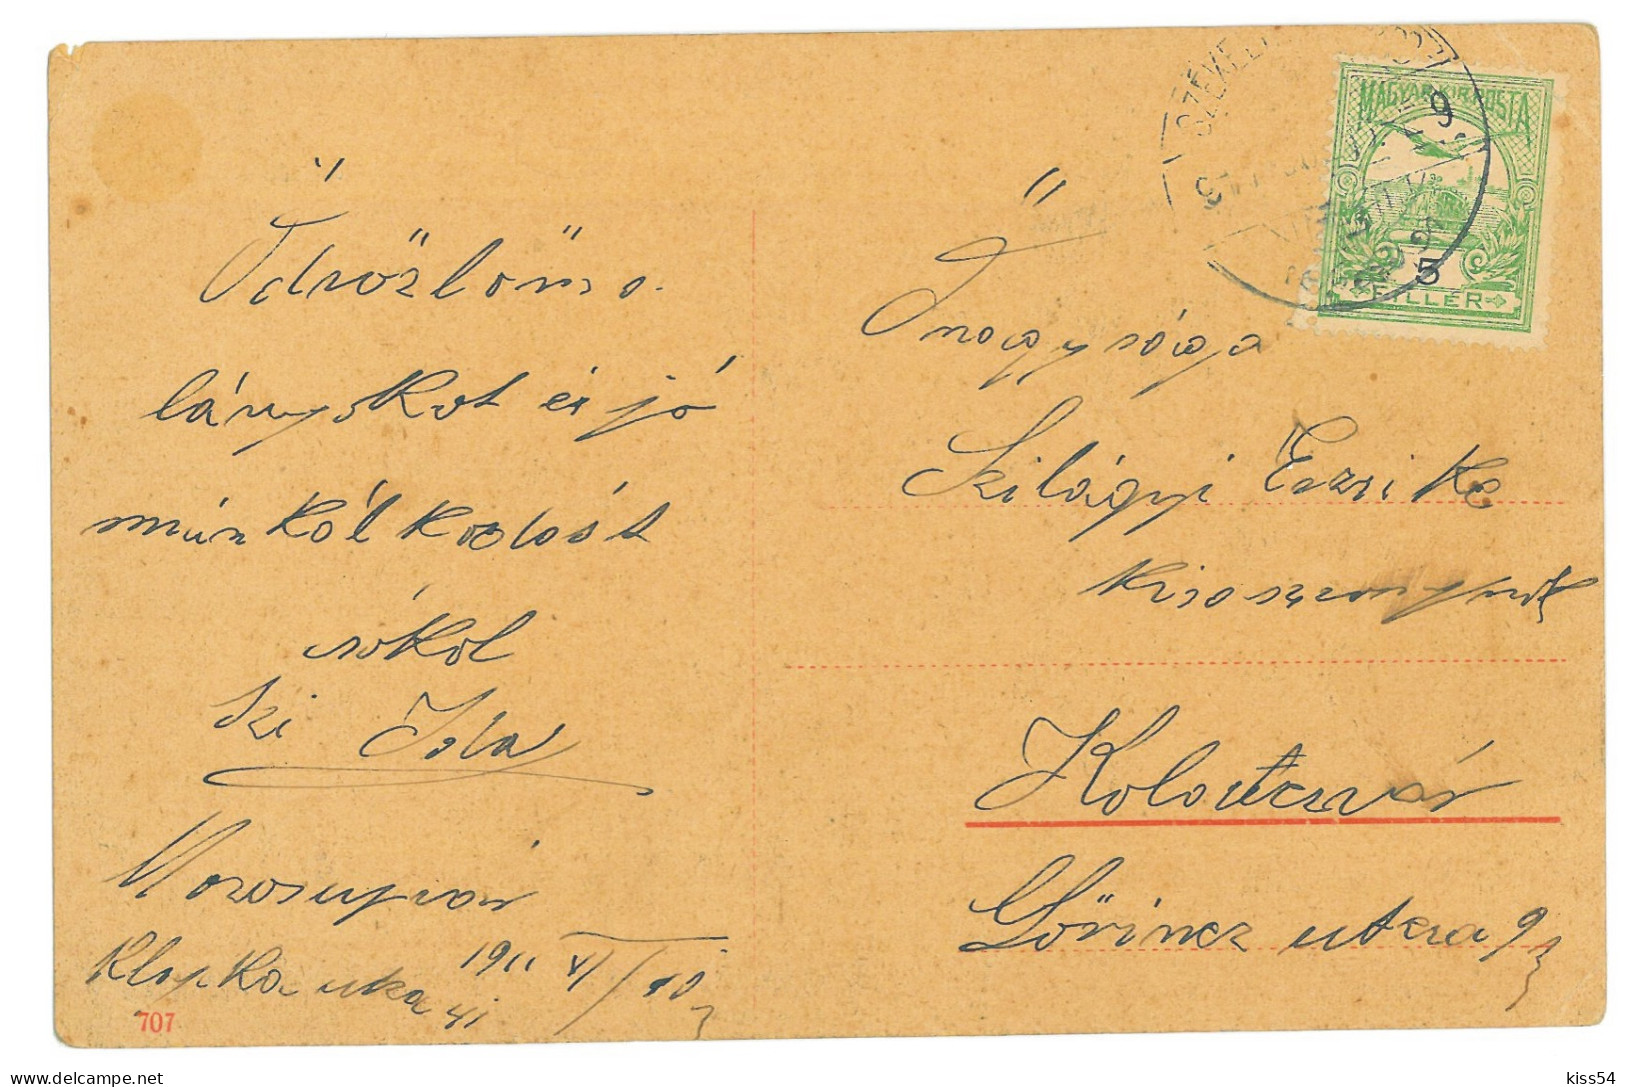 RO 81 - 25042 OCNA MURES, Alba, SALT Mine, Romania - Old Postcard - Used - 1910 - Rumänien